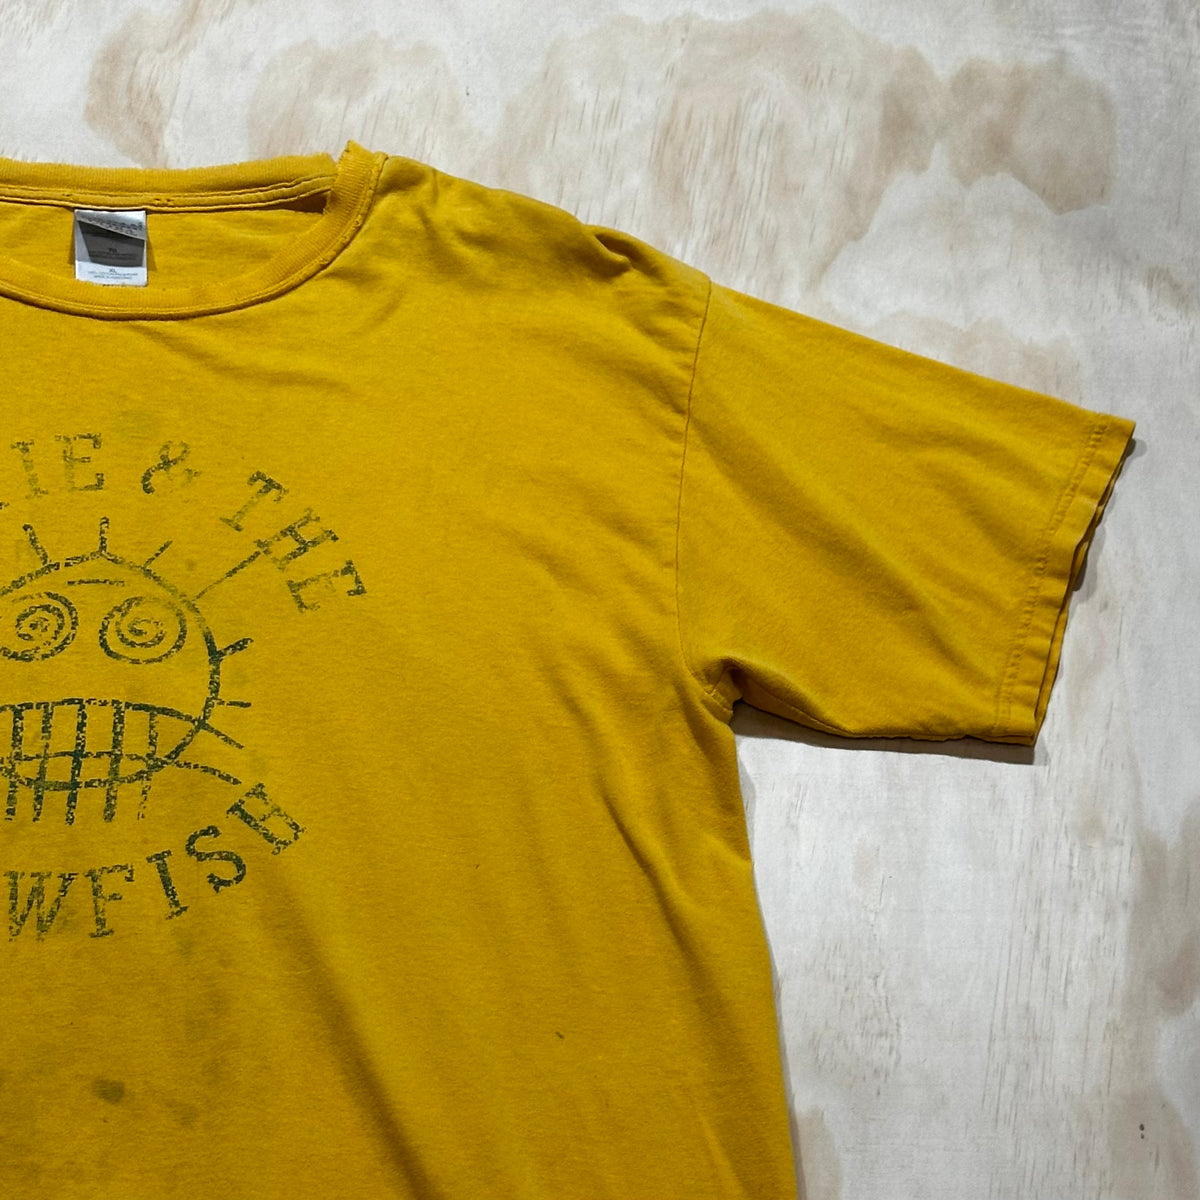 Vintage 1980s Hootie & The Blowfish Yellow Tshirt